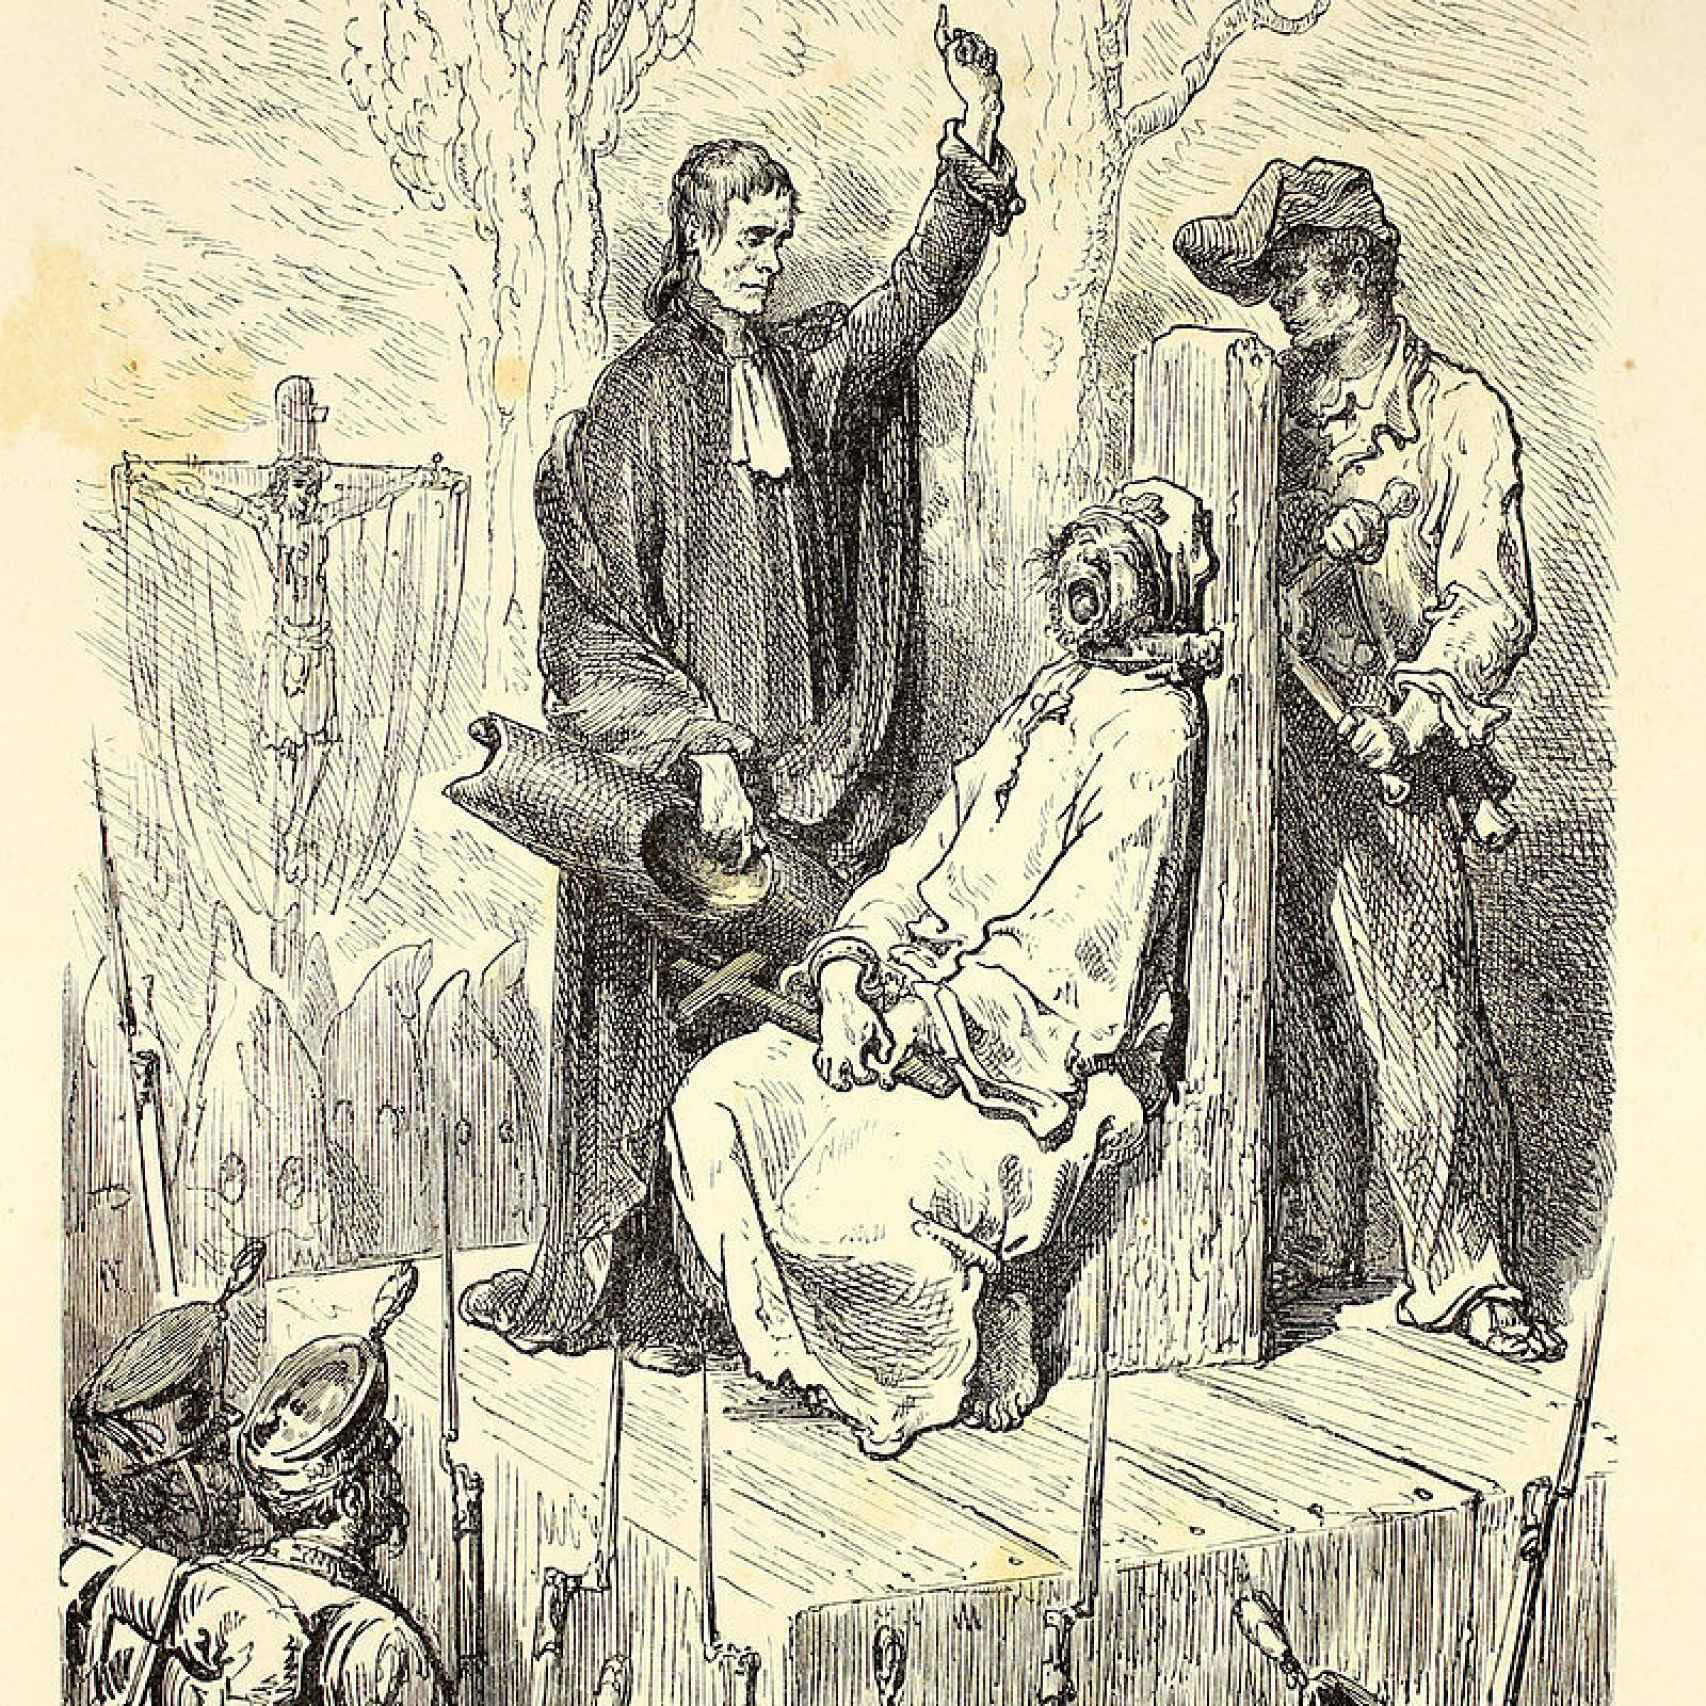 Ejecución de un asesino en Barcelona mediante garrote vil, grabado de Gustave Doré, publicado en L'Espagne en 1884.